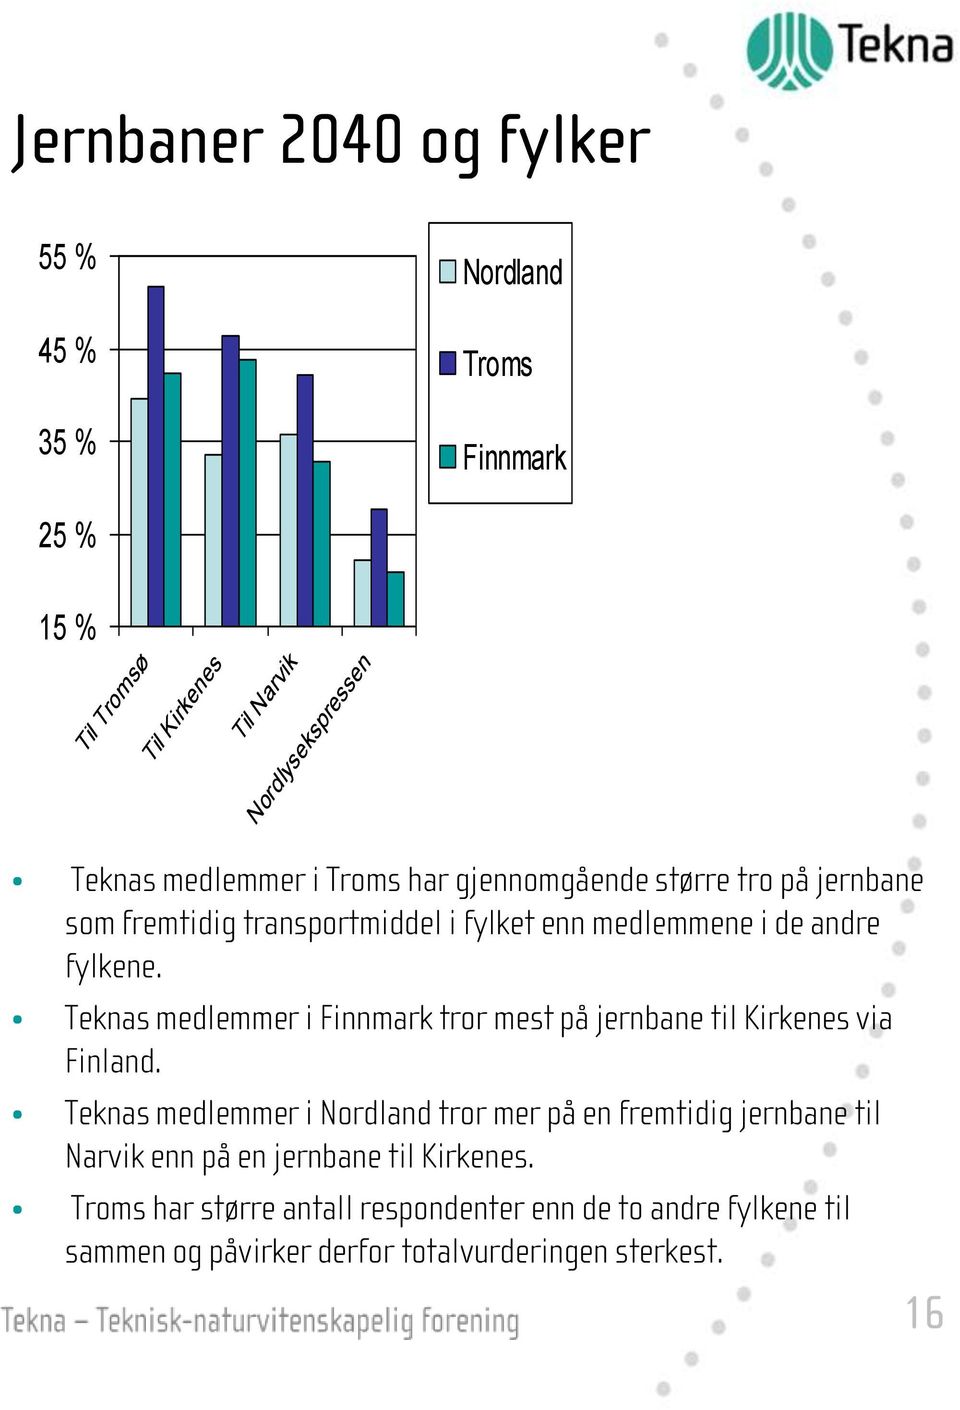 Teknas medlemmer i Finnmark tror mest på jernbane til Kirkenes via Finland.